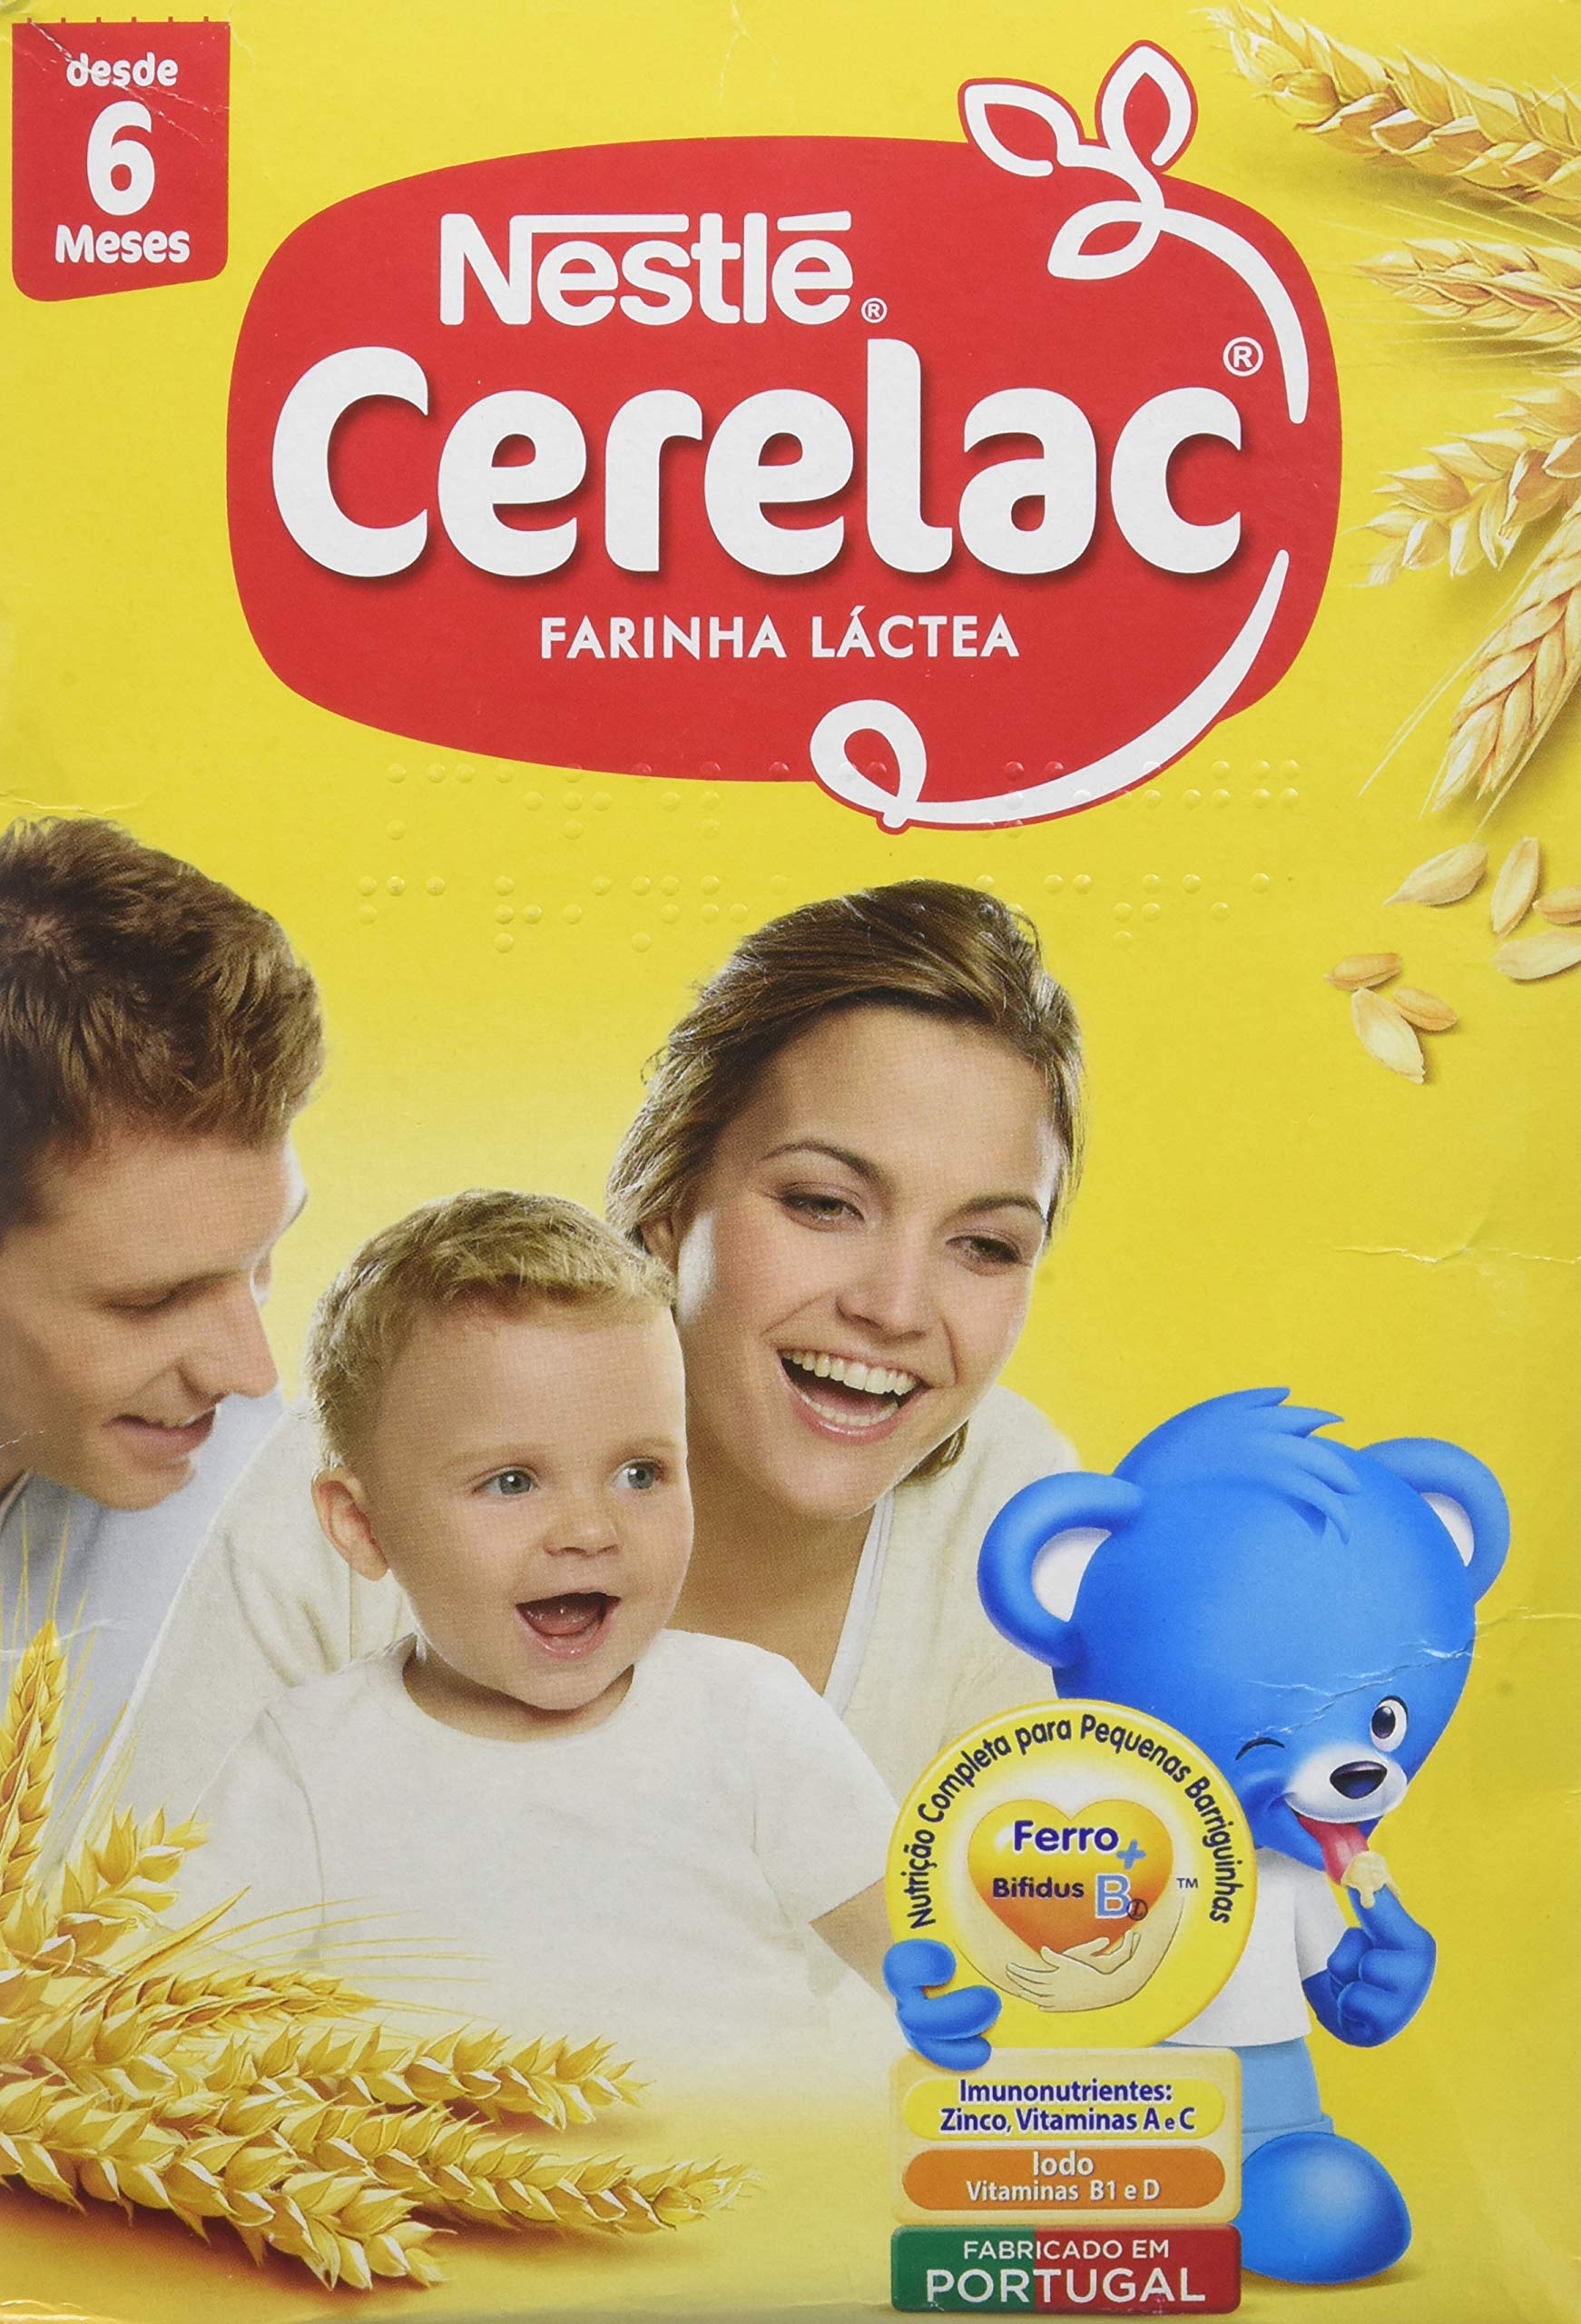 Nestlé cerelac farinha lactea – cérélac – (2x450g) – 900g